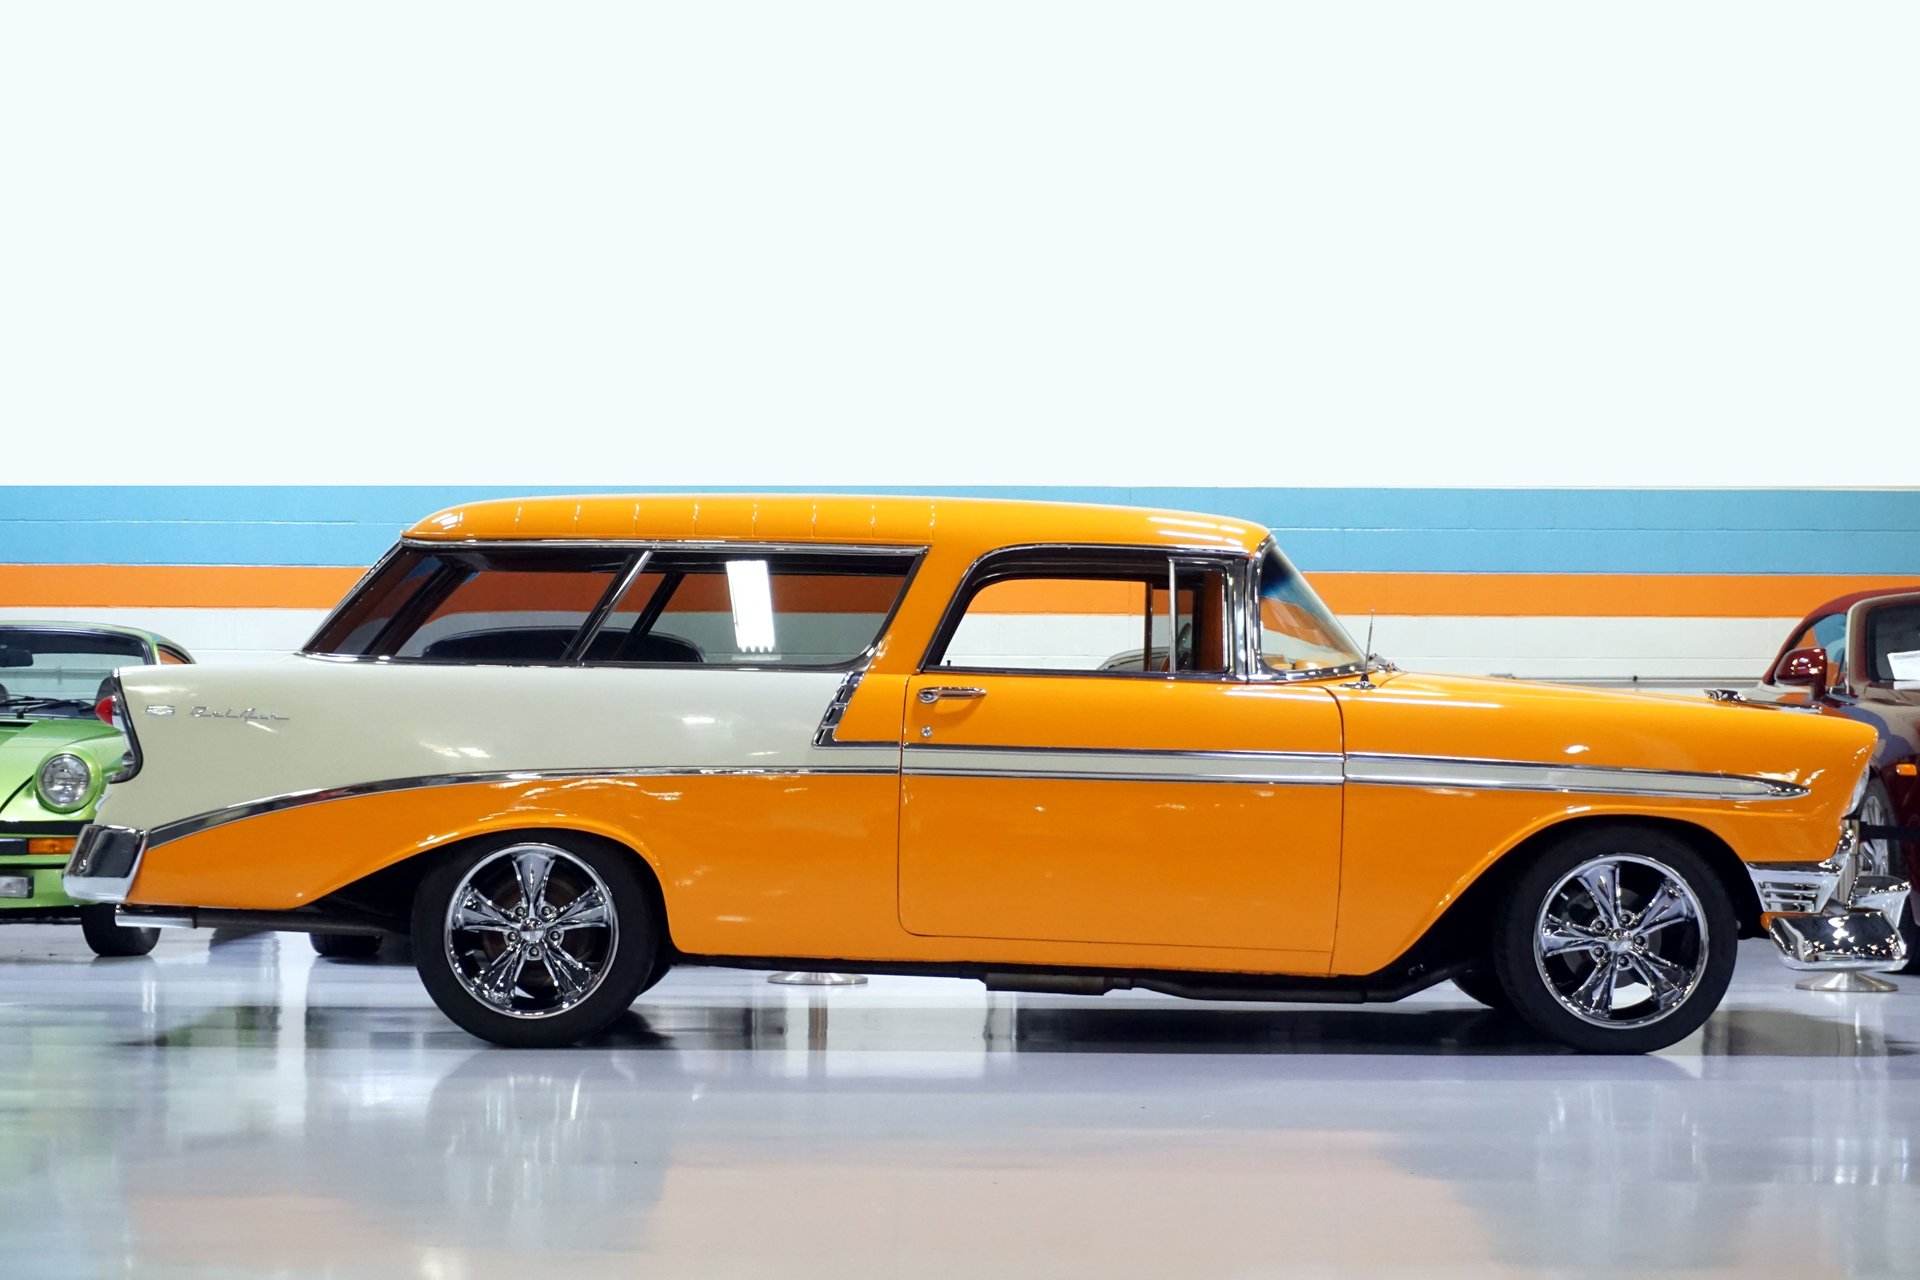 1956 Chevrolet Nomad